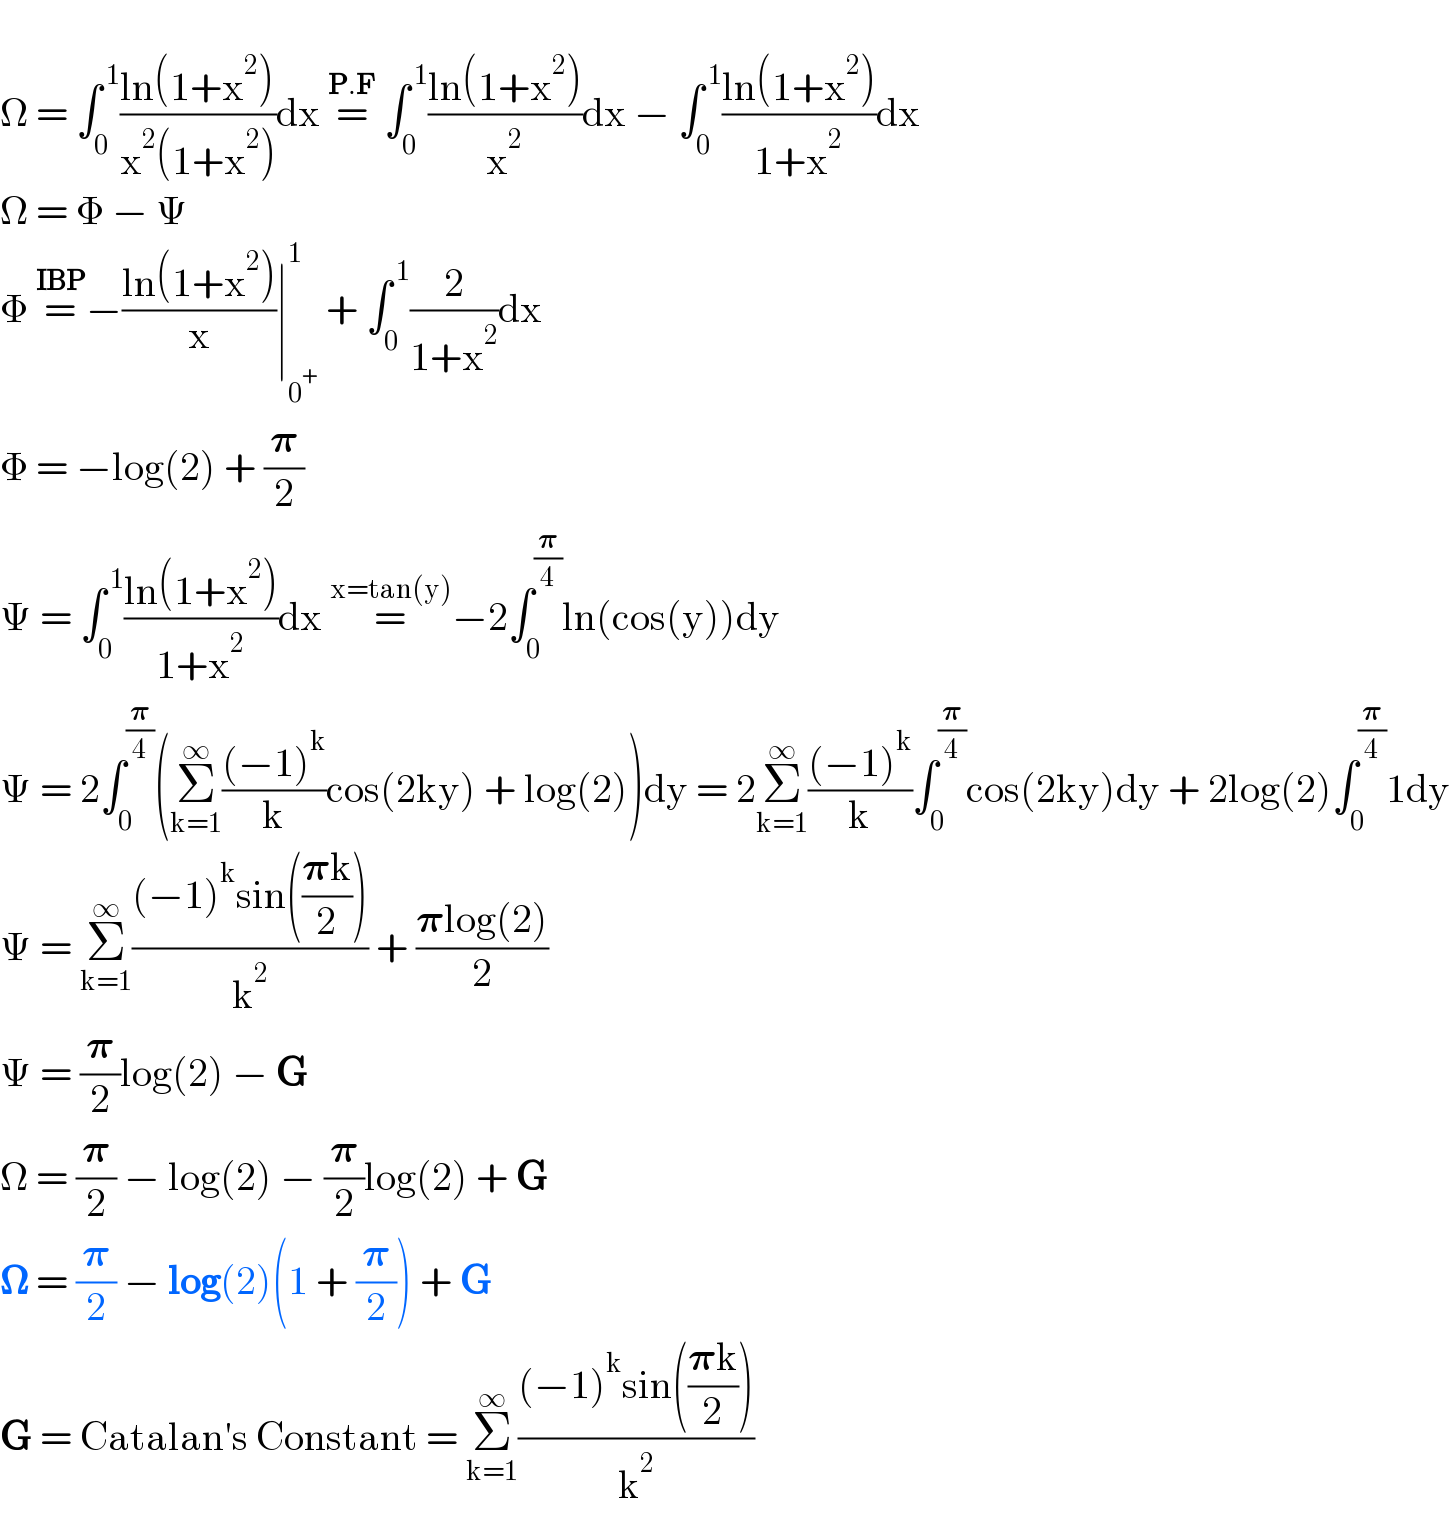   Ω = ∫_0 ^( 1) ((ln(1+x^2 ))/(x^2 (1+x^2 )))dx =^(P.F)  ∫_0 ^( 1) ((ln(1+x^2 ))/x^2 )dx − ∫_0 ^( 1) ((ln(1+x^2 ))/(1+x^2 ))dx  Ω = Φ − Ψ  Φ =^(IBP) −((ln(1+x^2 ))/x)∣_0^+  ^1  + ∫_0 ^( 1) (2/(1+x^2 ))dx  Φ = −log(2) + (𝛑/2)  Ψ = ∫_0 ^( 1) ((ln(1+x^2 ))/(1+x^2 ))dx =^(x=tan(y)) −2∫_0 ^(𝛑/4) ln(cos(y))dy  Ψ = 2∫_0 ^(𝛑/4) (Σ_(k=1) ^∞ (((−1)^k )/k)cos(2ky) + log(2))dy = 2Σ_(k=1) ^∞ (((−1)^k )/k)∫_0 ^(𝛑/4) cos(2ky)dy + 2log(2)∫_0 ^(𝛑/4) 1dy  Ψ = Σ_(k=1) ^∞ (((−1)^k sin(((𝛑k)/2)))/k^2 ) + ((𝛑log(2))/2)  Ψ = (𝛑/2)log(2) − G  Ω = (𝛑/2) − log(2) − (𝛑/2)log(2) + G  𝛀 = (𝛑/2) − log(2)(1 + (𝛑/2)) + G  G = Catalan′s Constant = Σ_(k=1) ^∞ (((−1)^k sin(((𝛑k)/2)))/k^2 )  